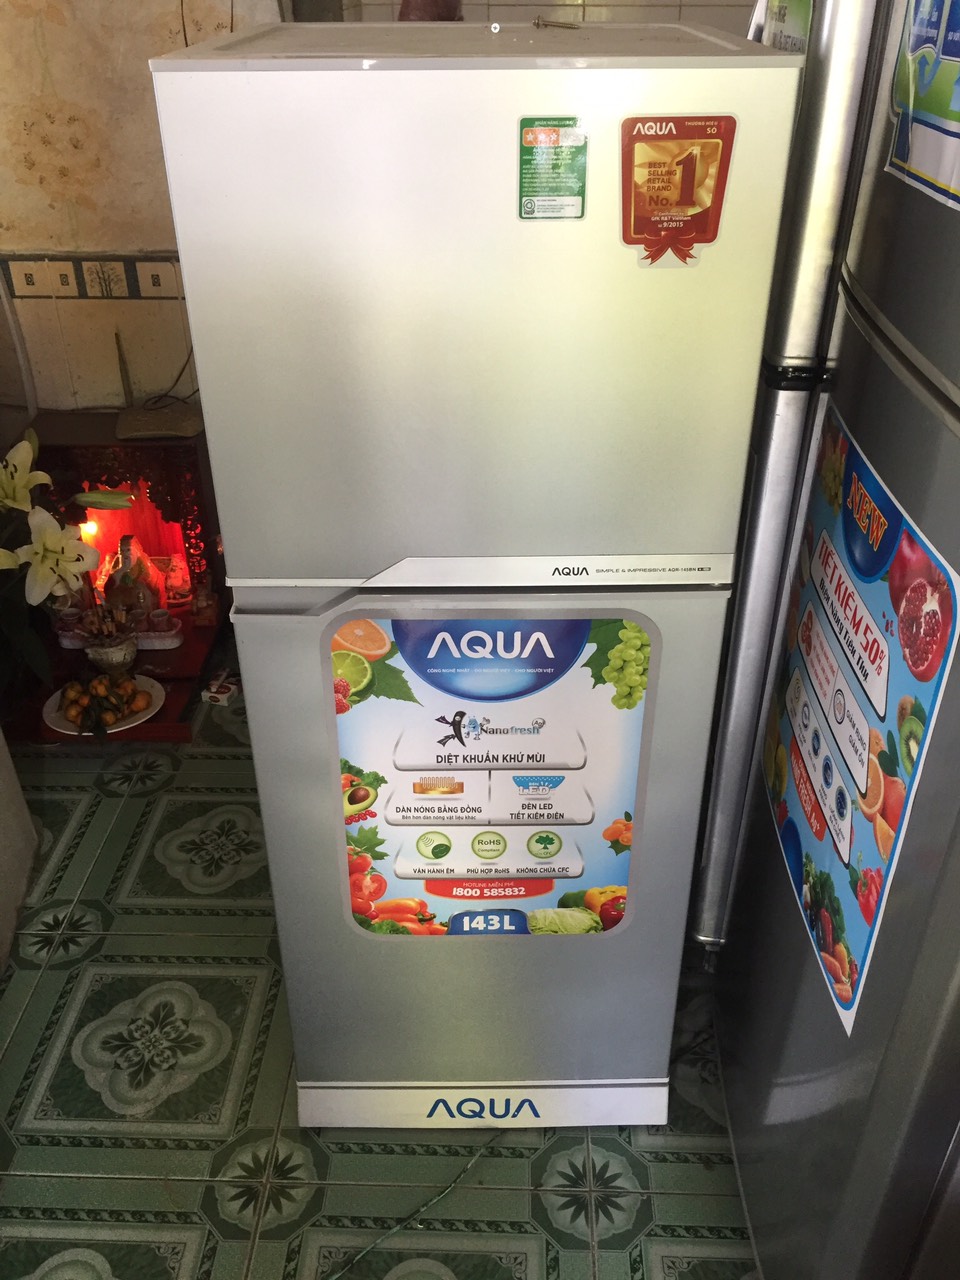 Tủ Lạnh AQUA 143L nguyên zing 100% ngoại hình mới đẹp 99% 3